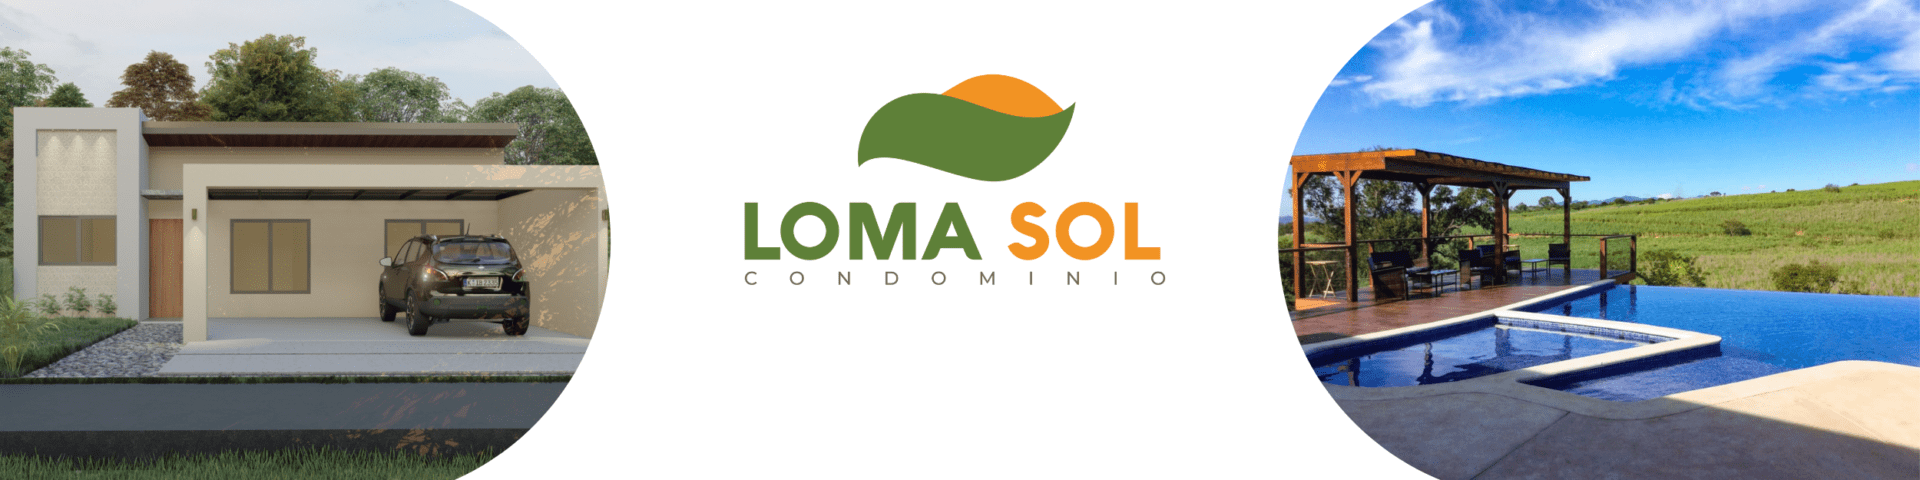 Loma Sol Condominio